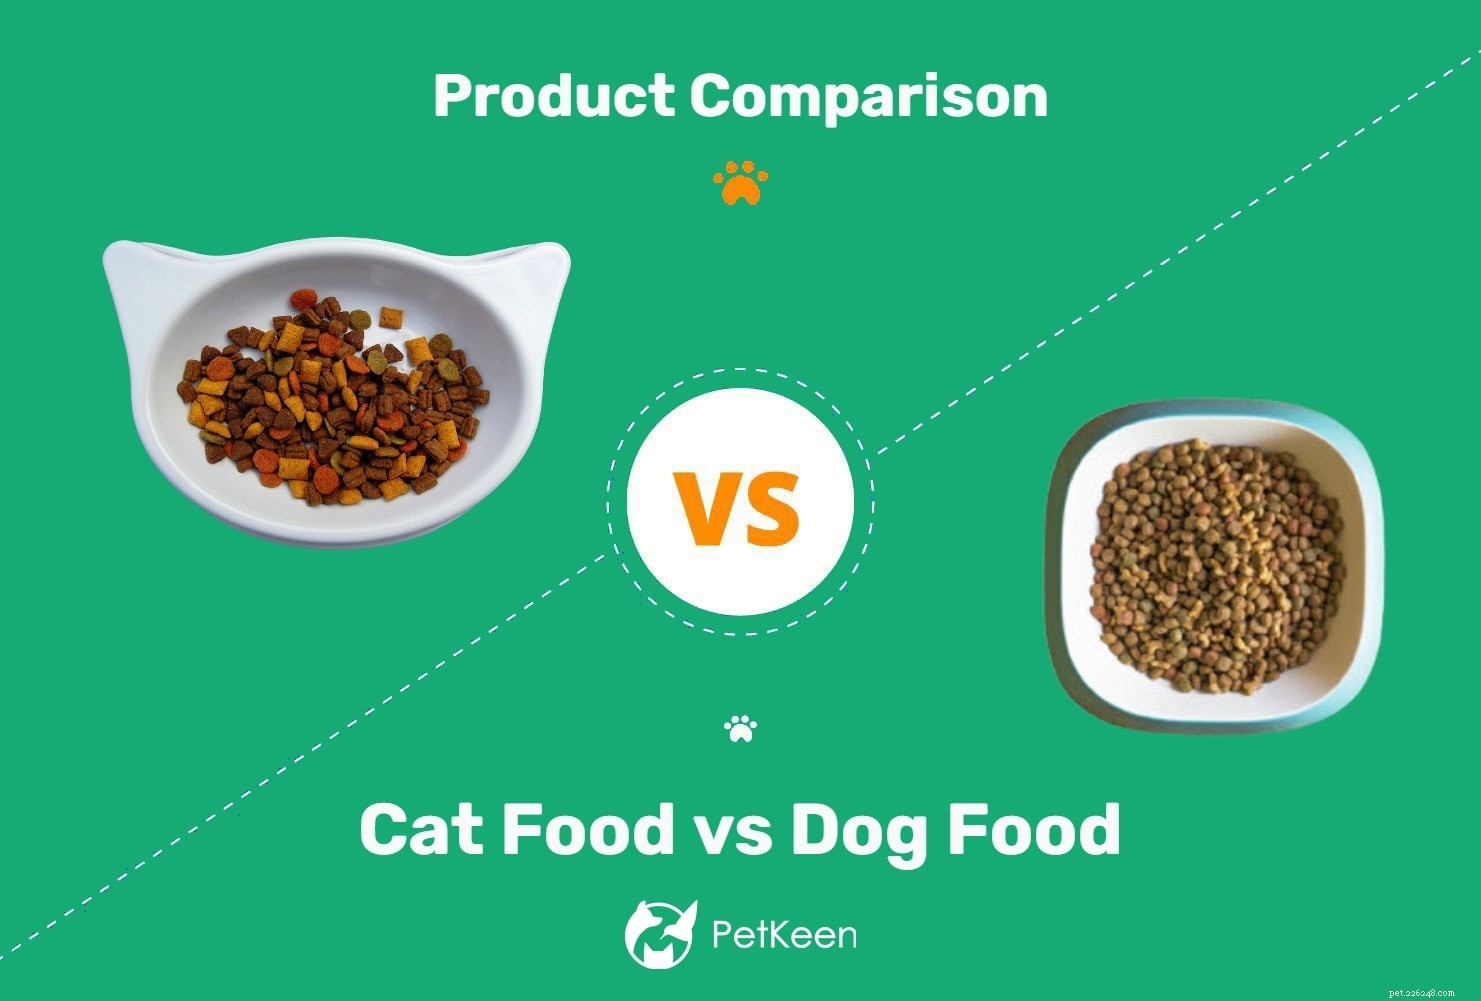 Cibo per gatti e cibo per cani:quali sono le differenze?